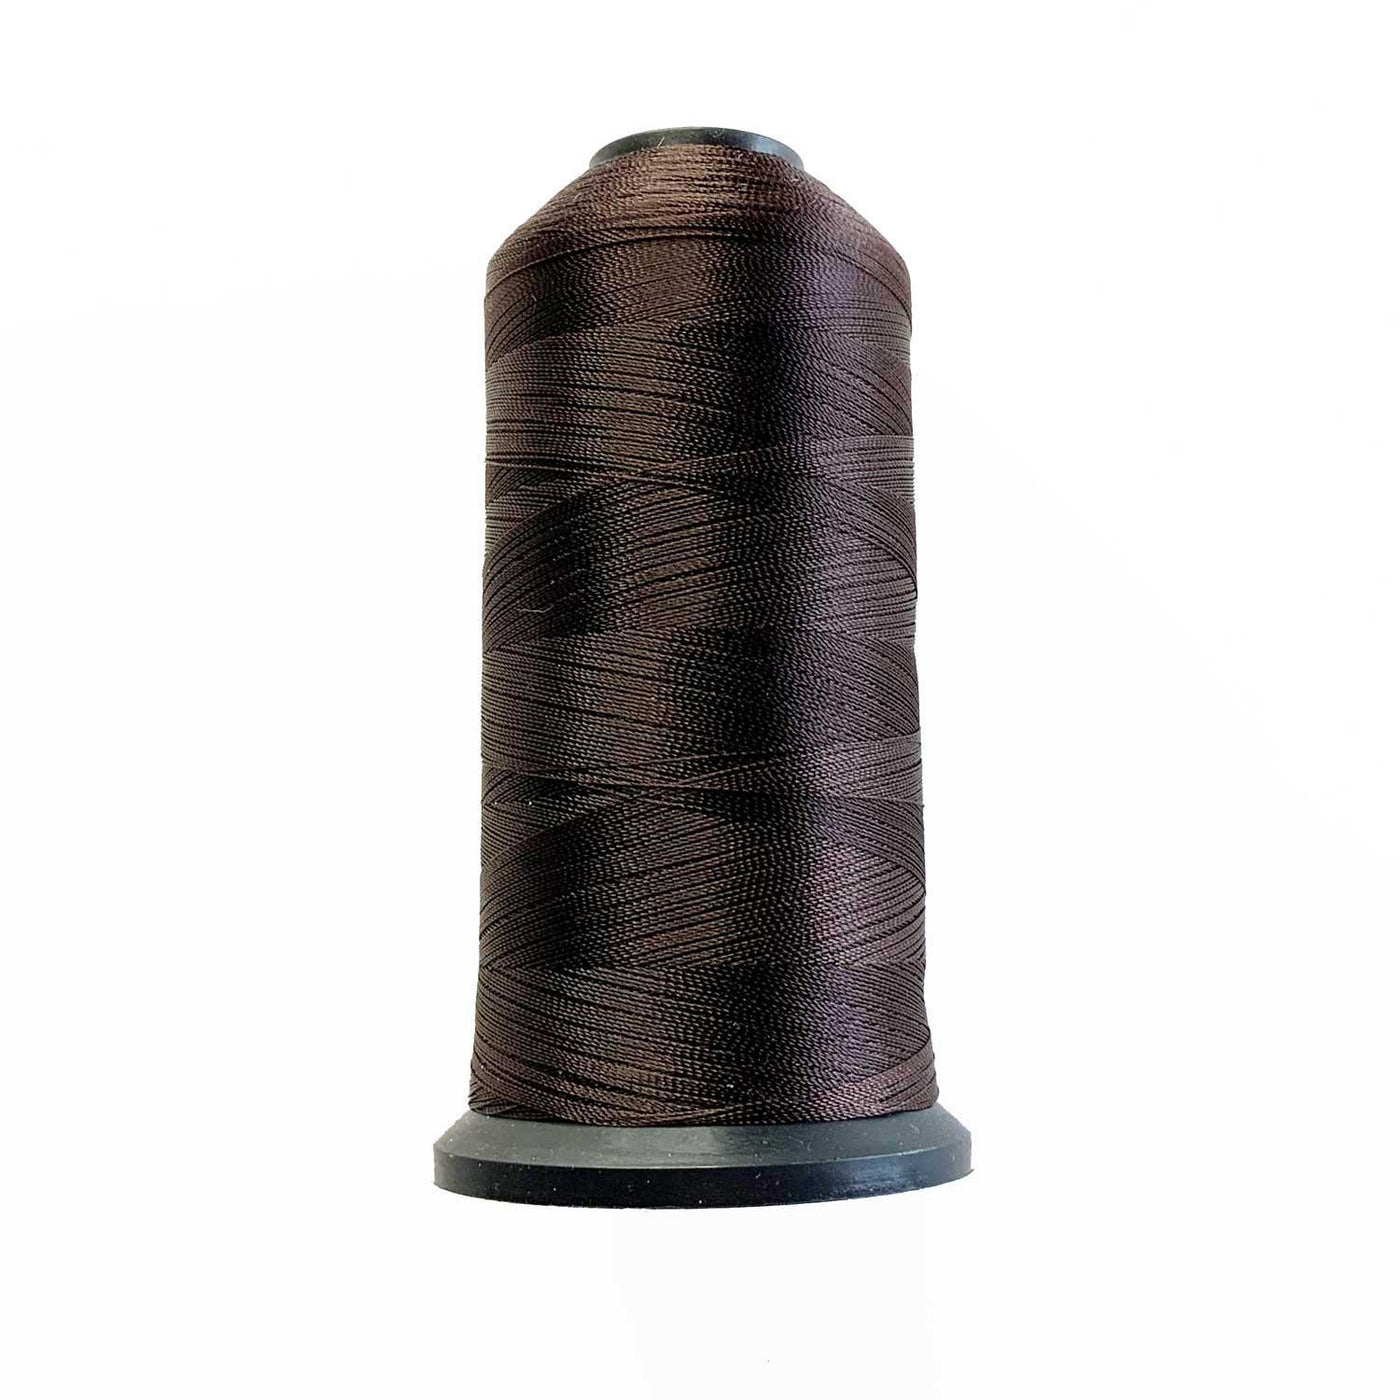 Laced Hair Thin Nylon Weaving Thread